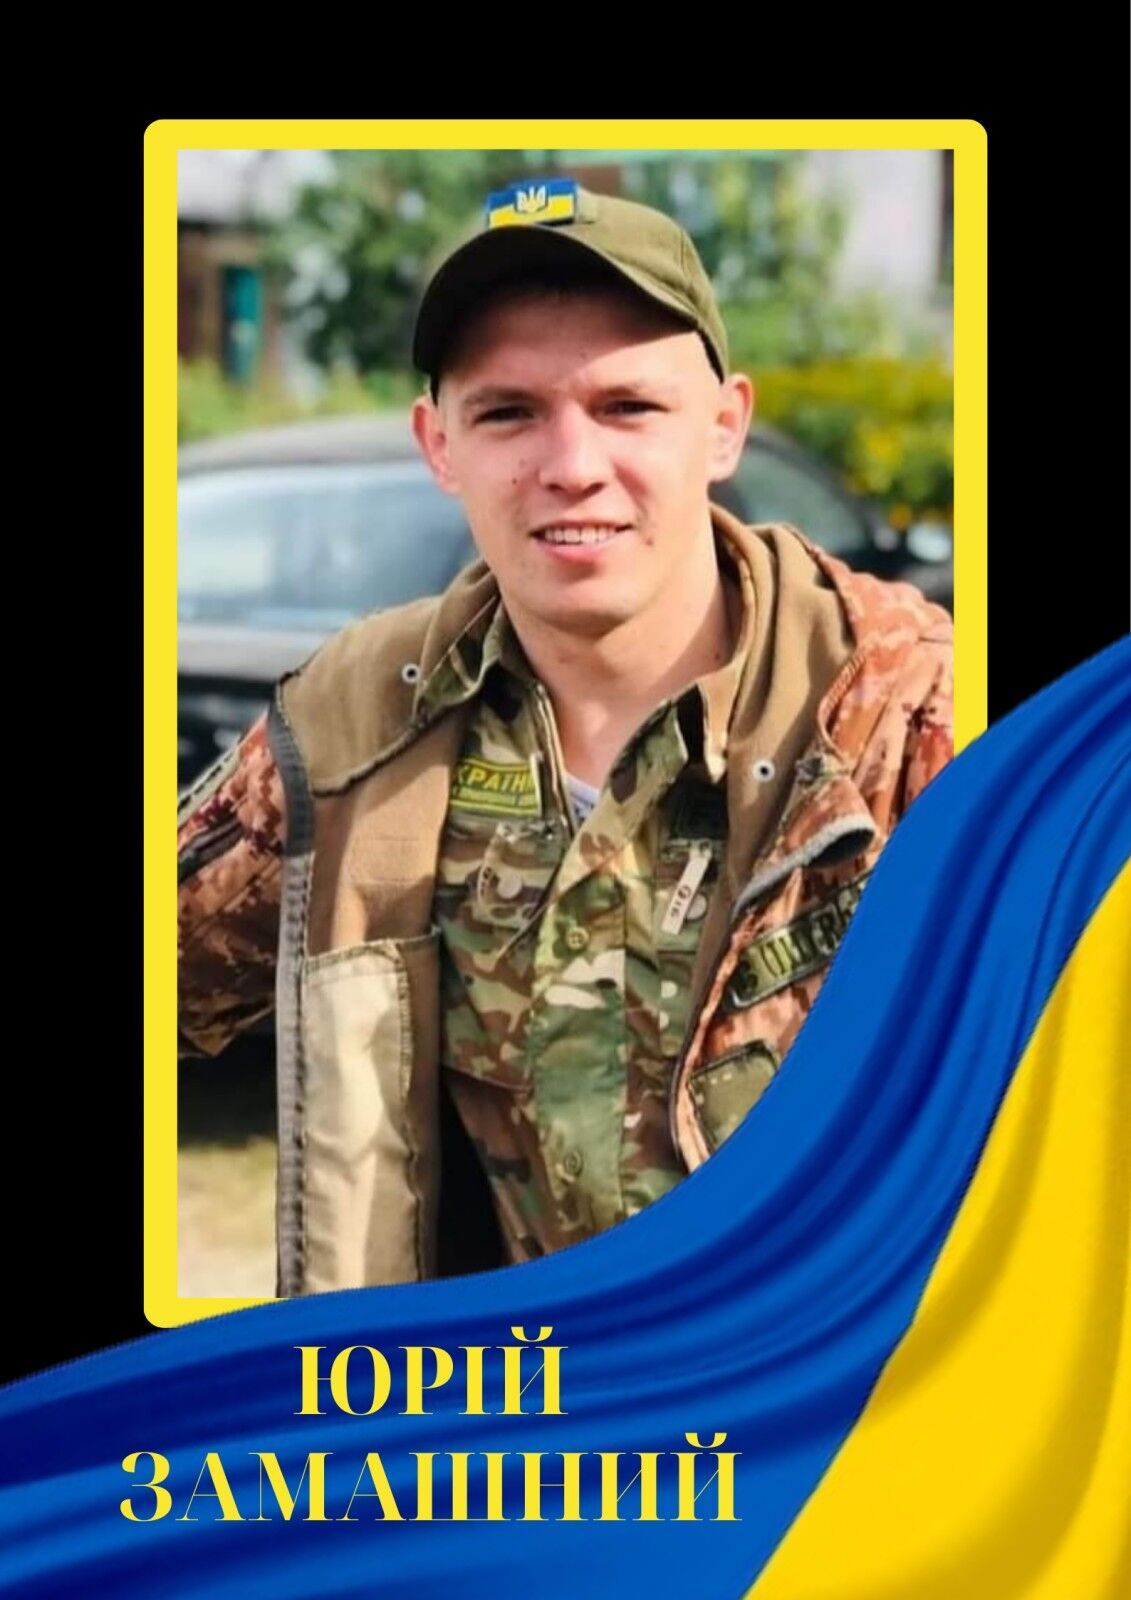 Прикривав вогнем своїх побратимів: у боях на Донеччині загинув молодий захисник із Черкащини. Фото  dqdiqhiqdkideeant